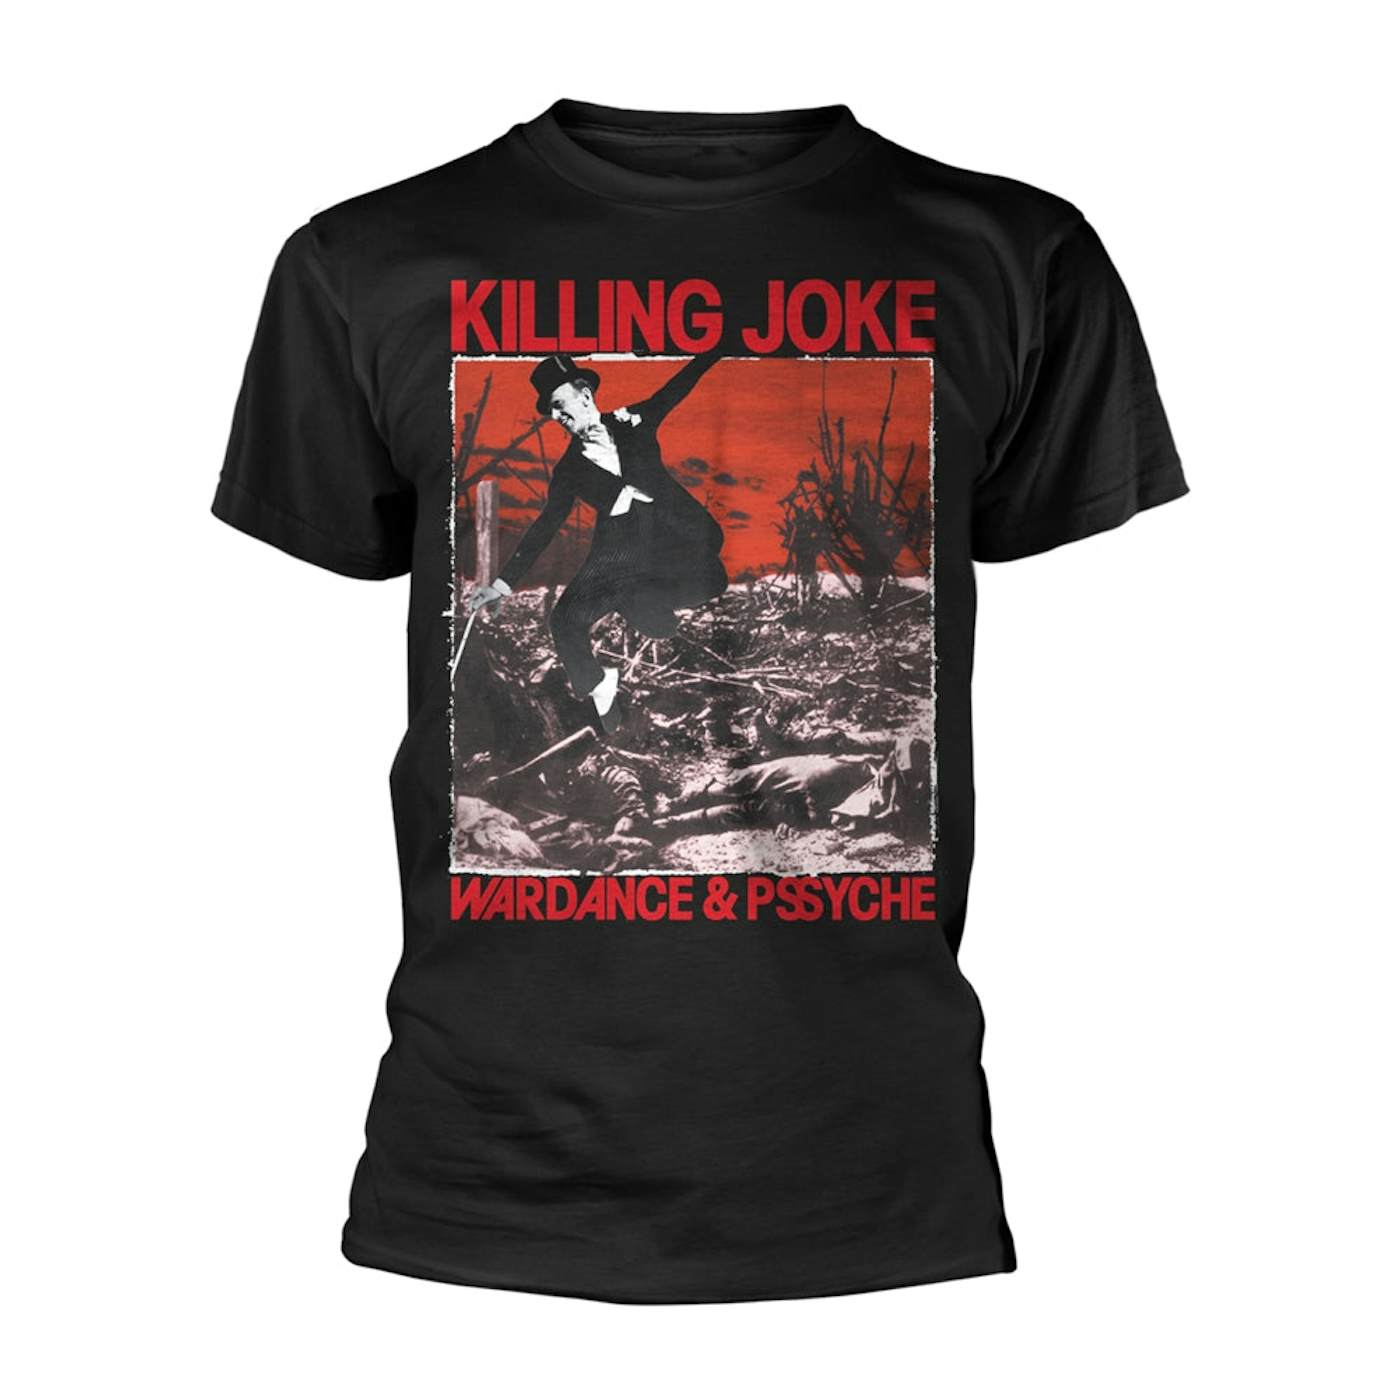 Killing Joke T Shirt - Wardance & Pssyche